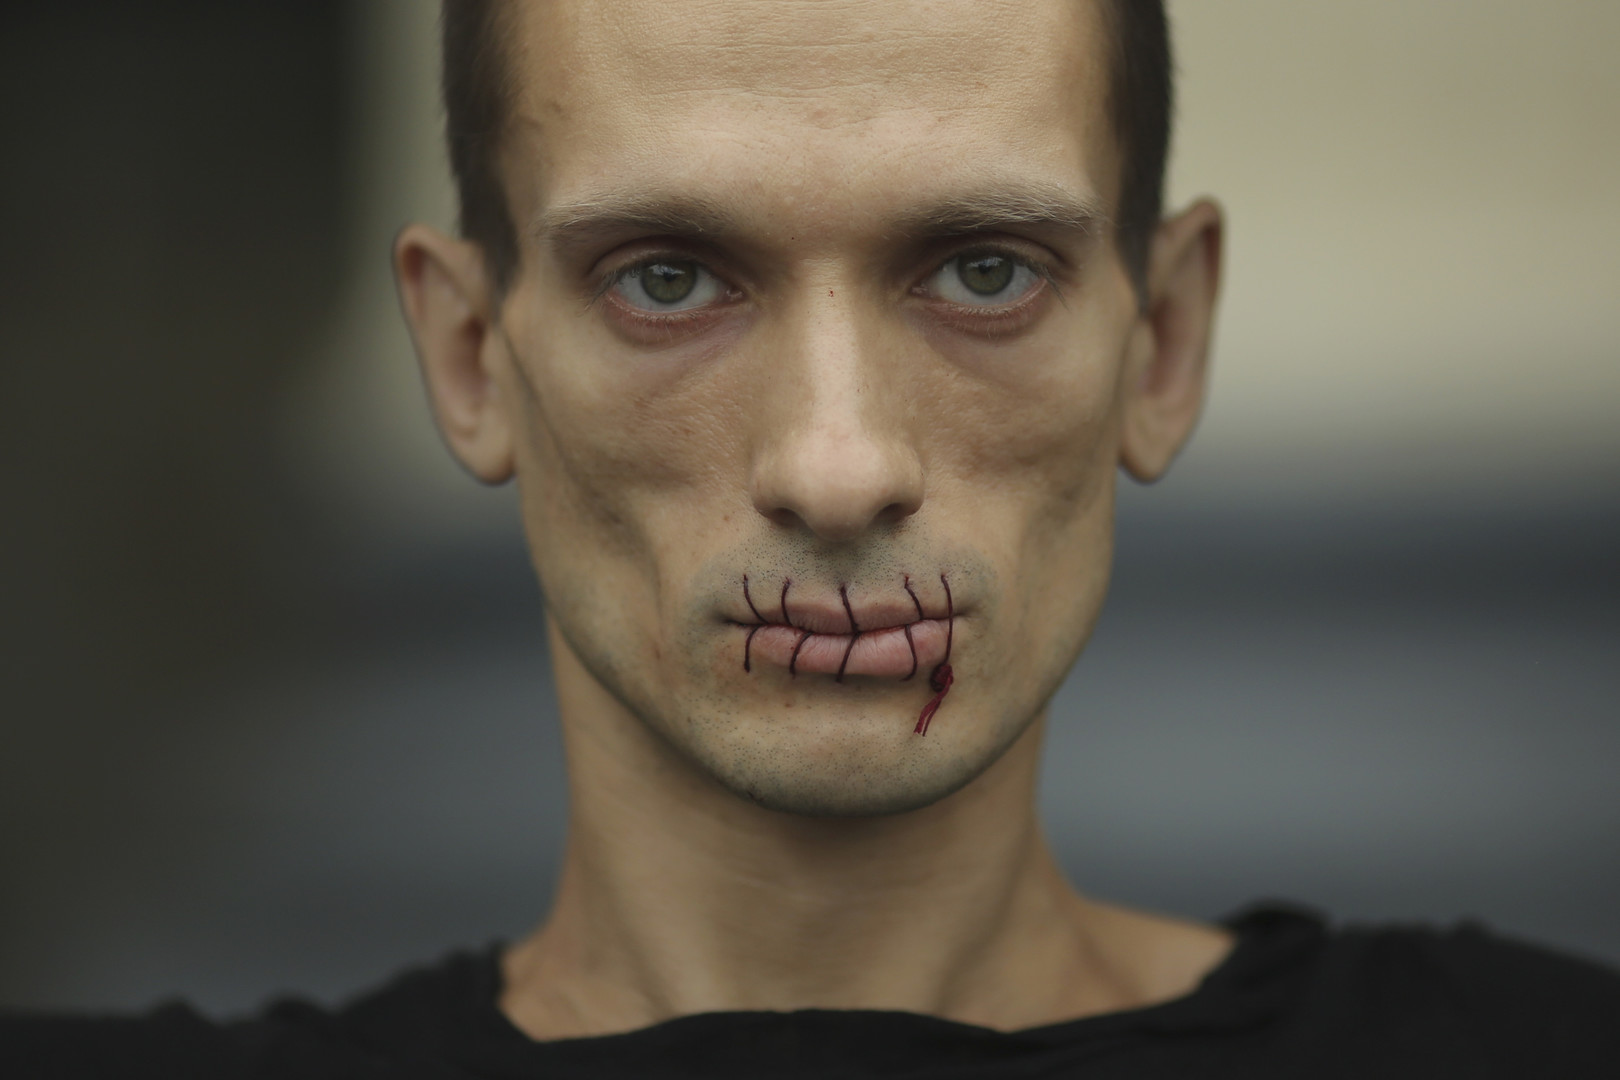 L'artiste russe controversé Piotr Pavlensky souhaite demander l'asile politique en France